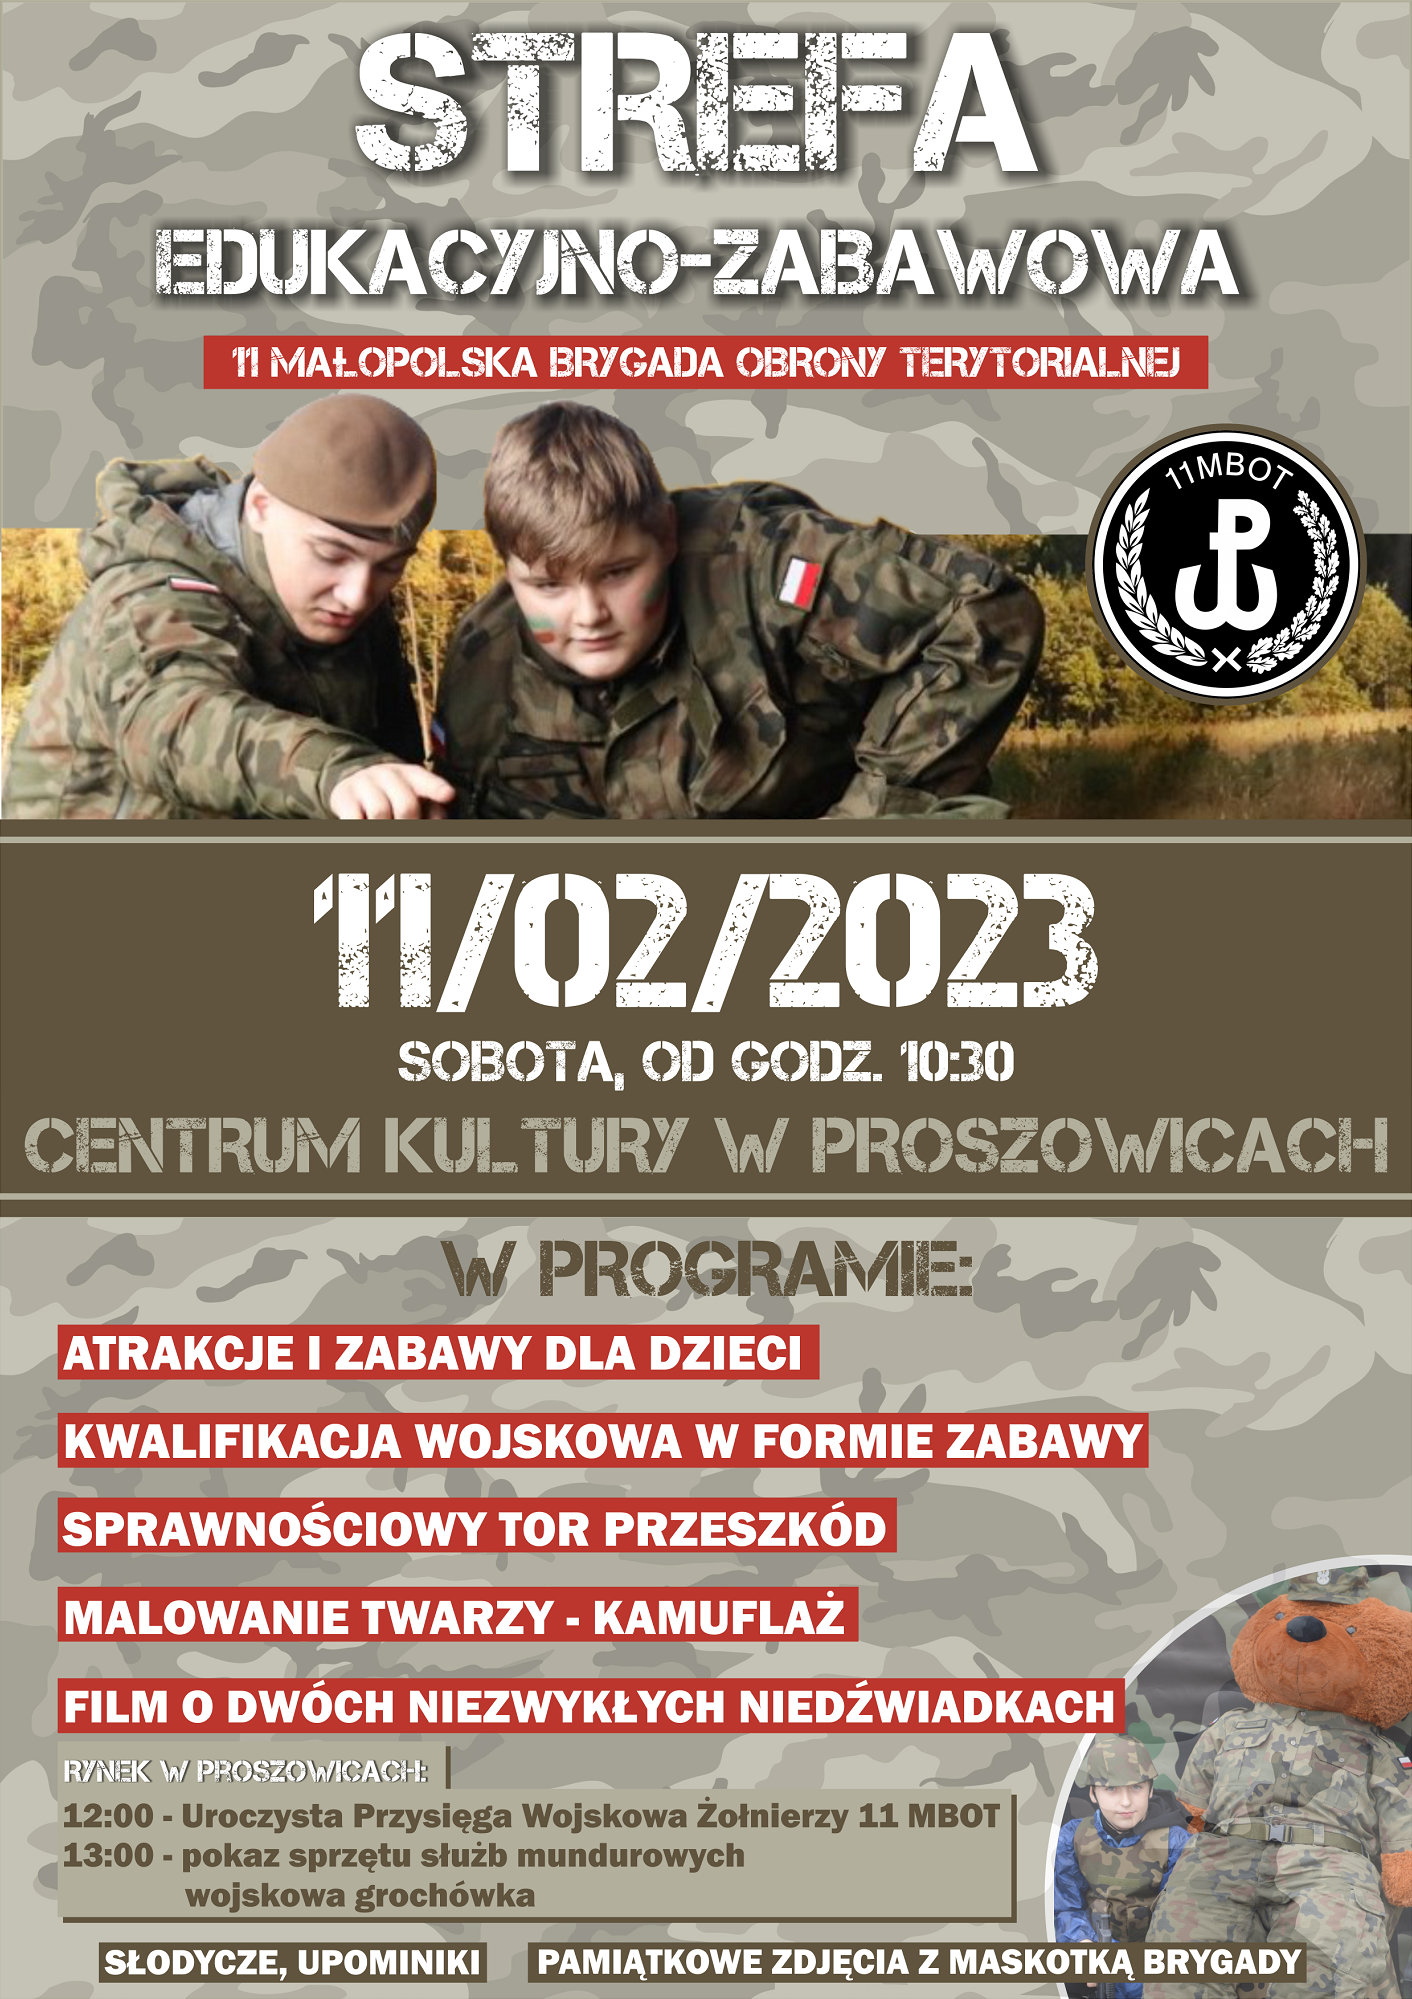 Plakat zachęcający do odwiedzenia strefy edukacyjno-zabawowej 11 Małopolskiej Brygady Obrony Terytorialnej.